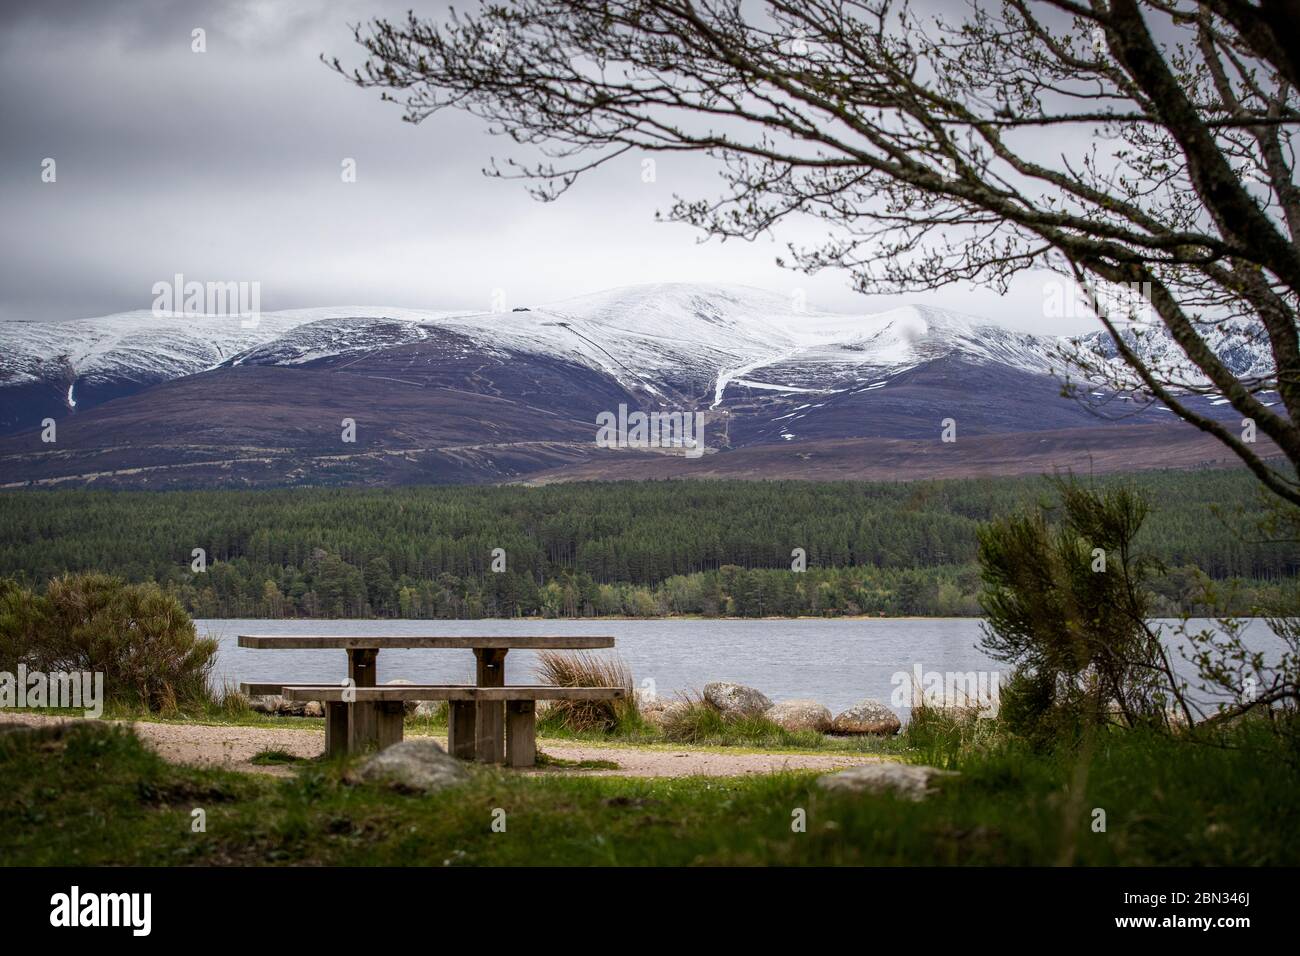 Ein leerer Picknicktisch am Loch Morlich im Cairngorms National Park, nahe Aviemore, nachdem den Menschen gesagt wurde, dass sie nicht nach Schottland reisen sollten, obwohl die Regierung die Lockerungsmaßnahmen in England angekündigt hatte. Stockfoto